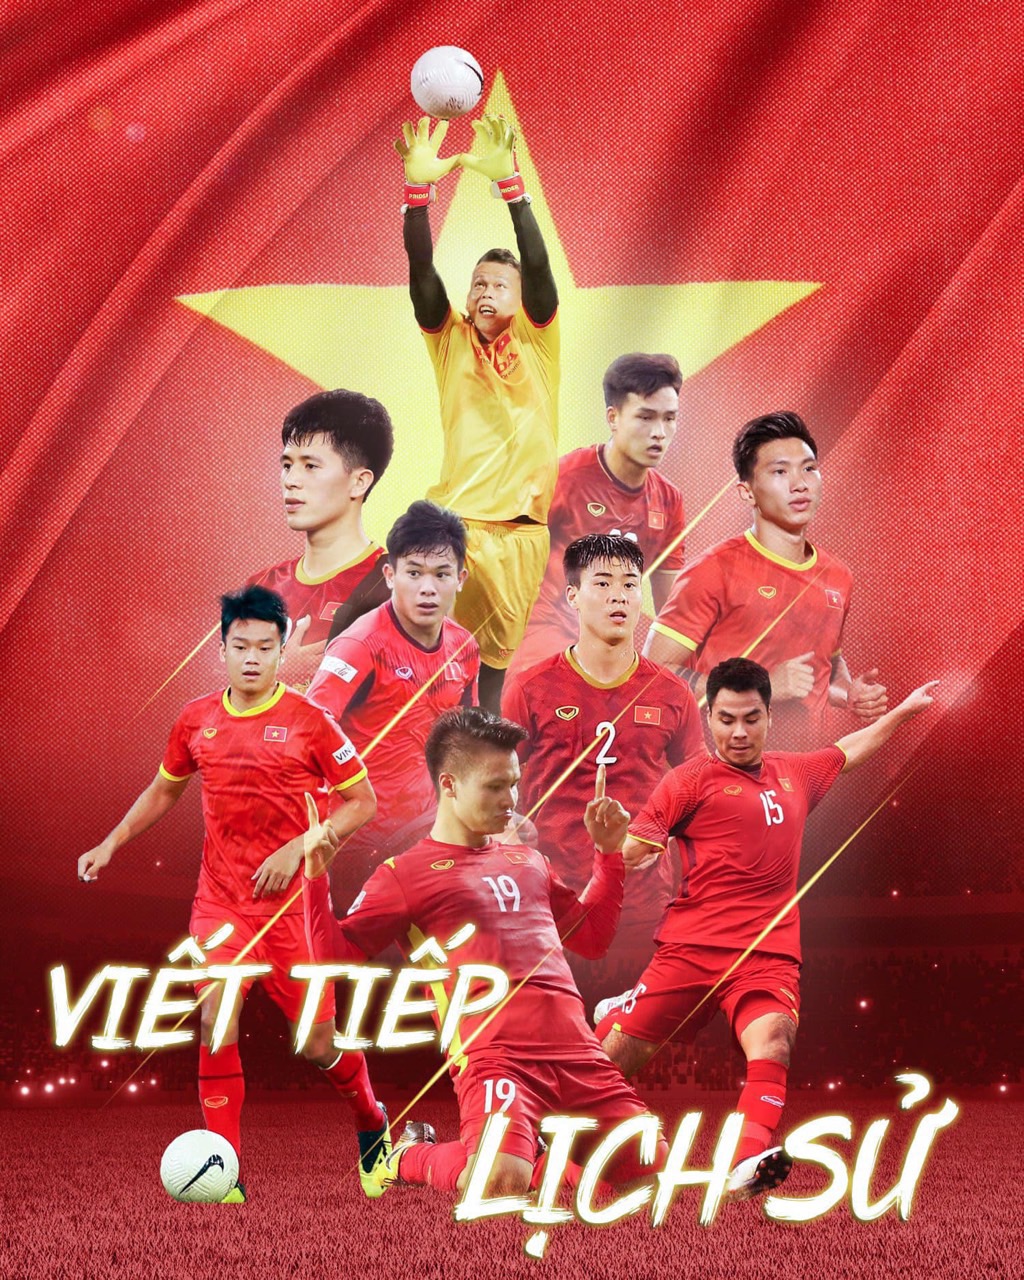 Tranh ảnh poster treo đội tuyển bóng đá Việt Nam 3-6 tấm a4 khác nhau